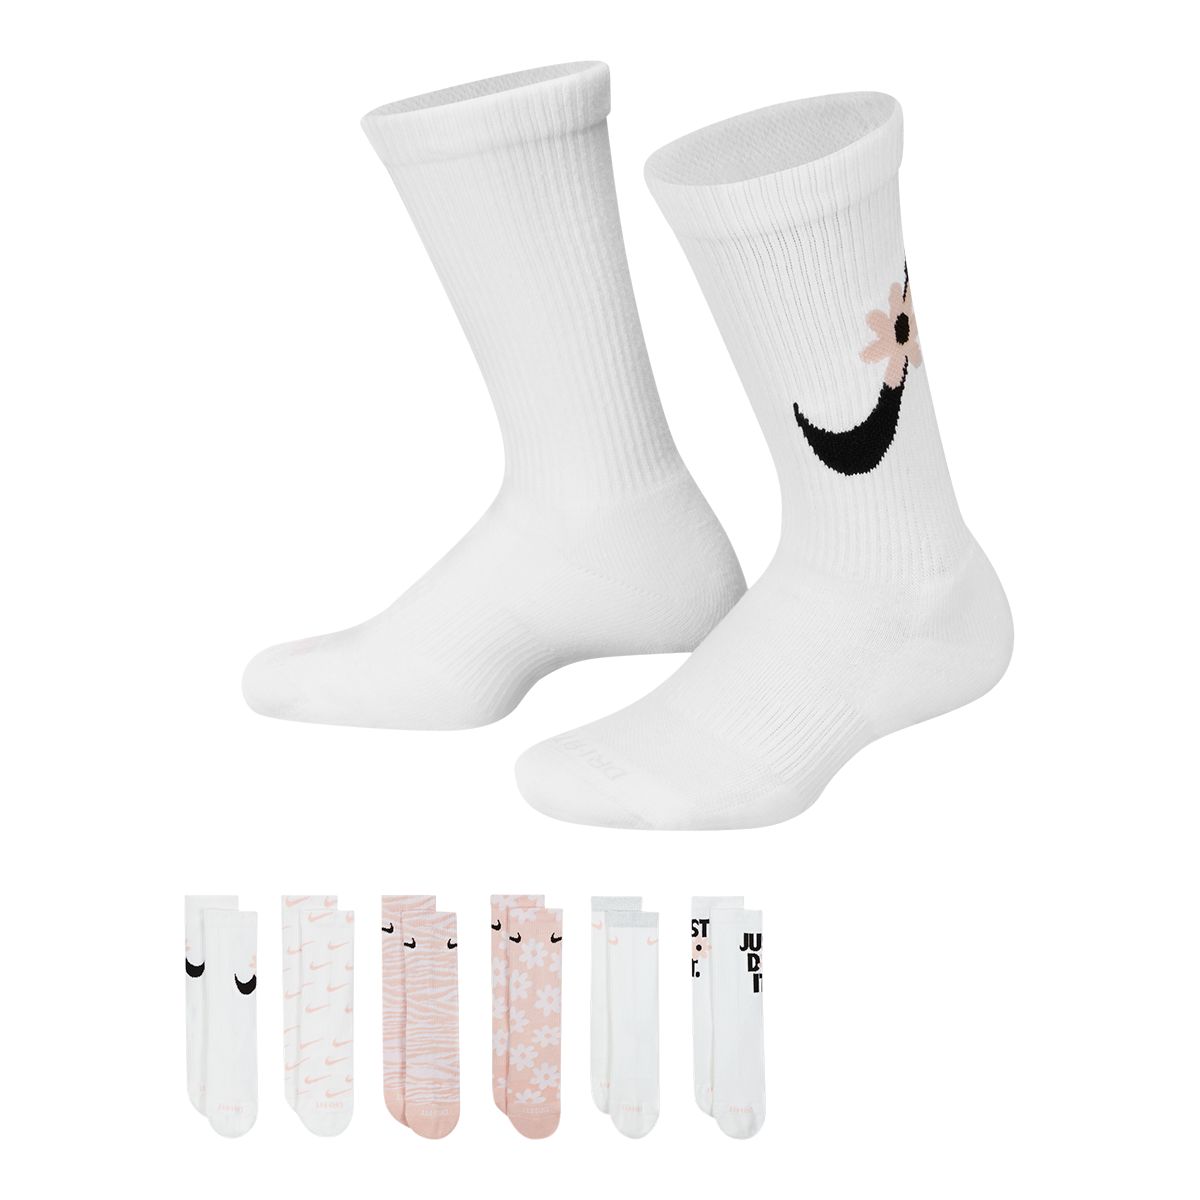 Nike Girls' Everyday Graphic Crew Socks - 6 Pack